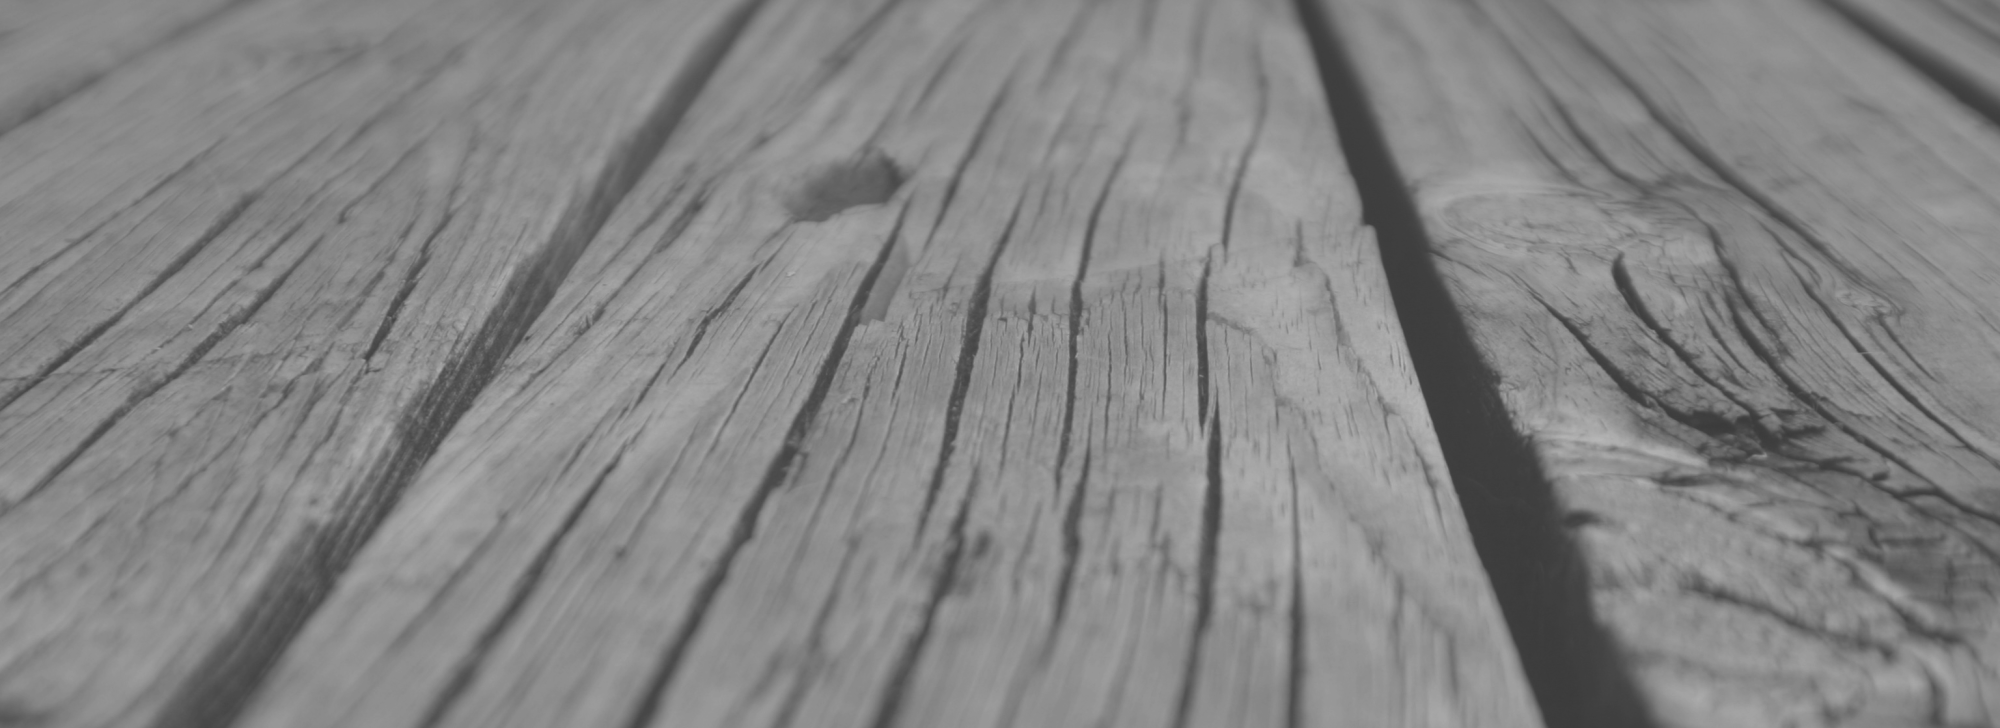 Wood-planks-IMG_8841